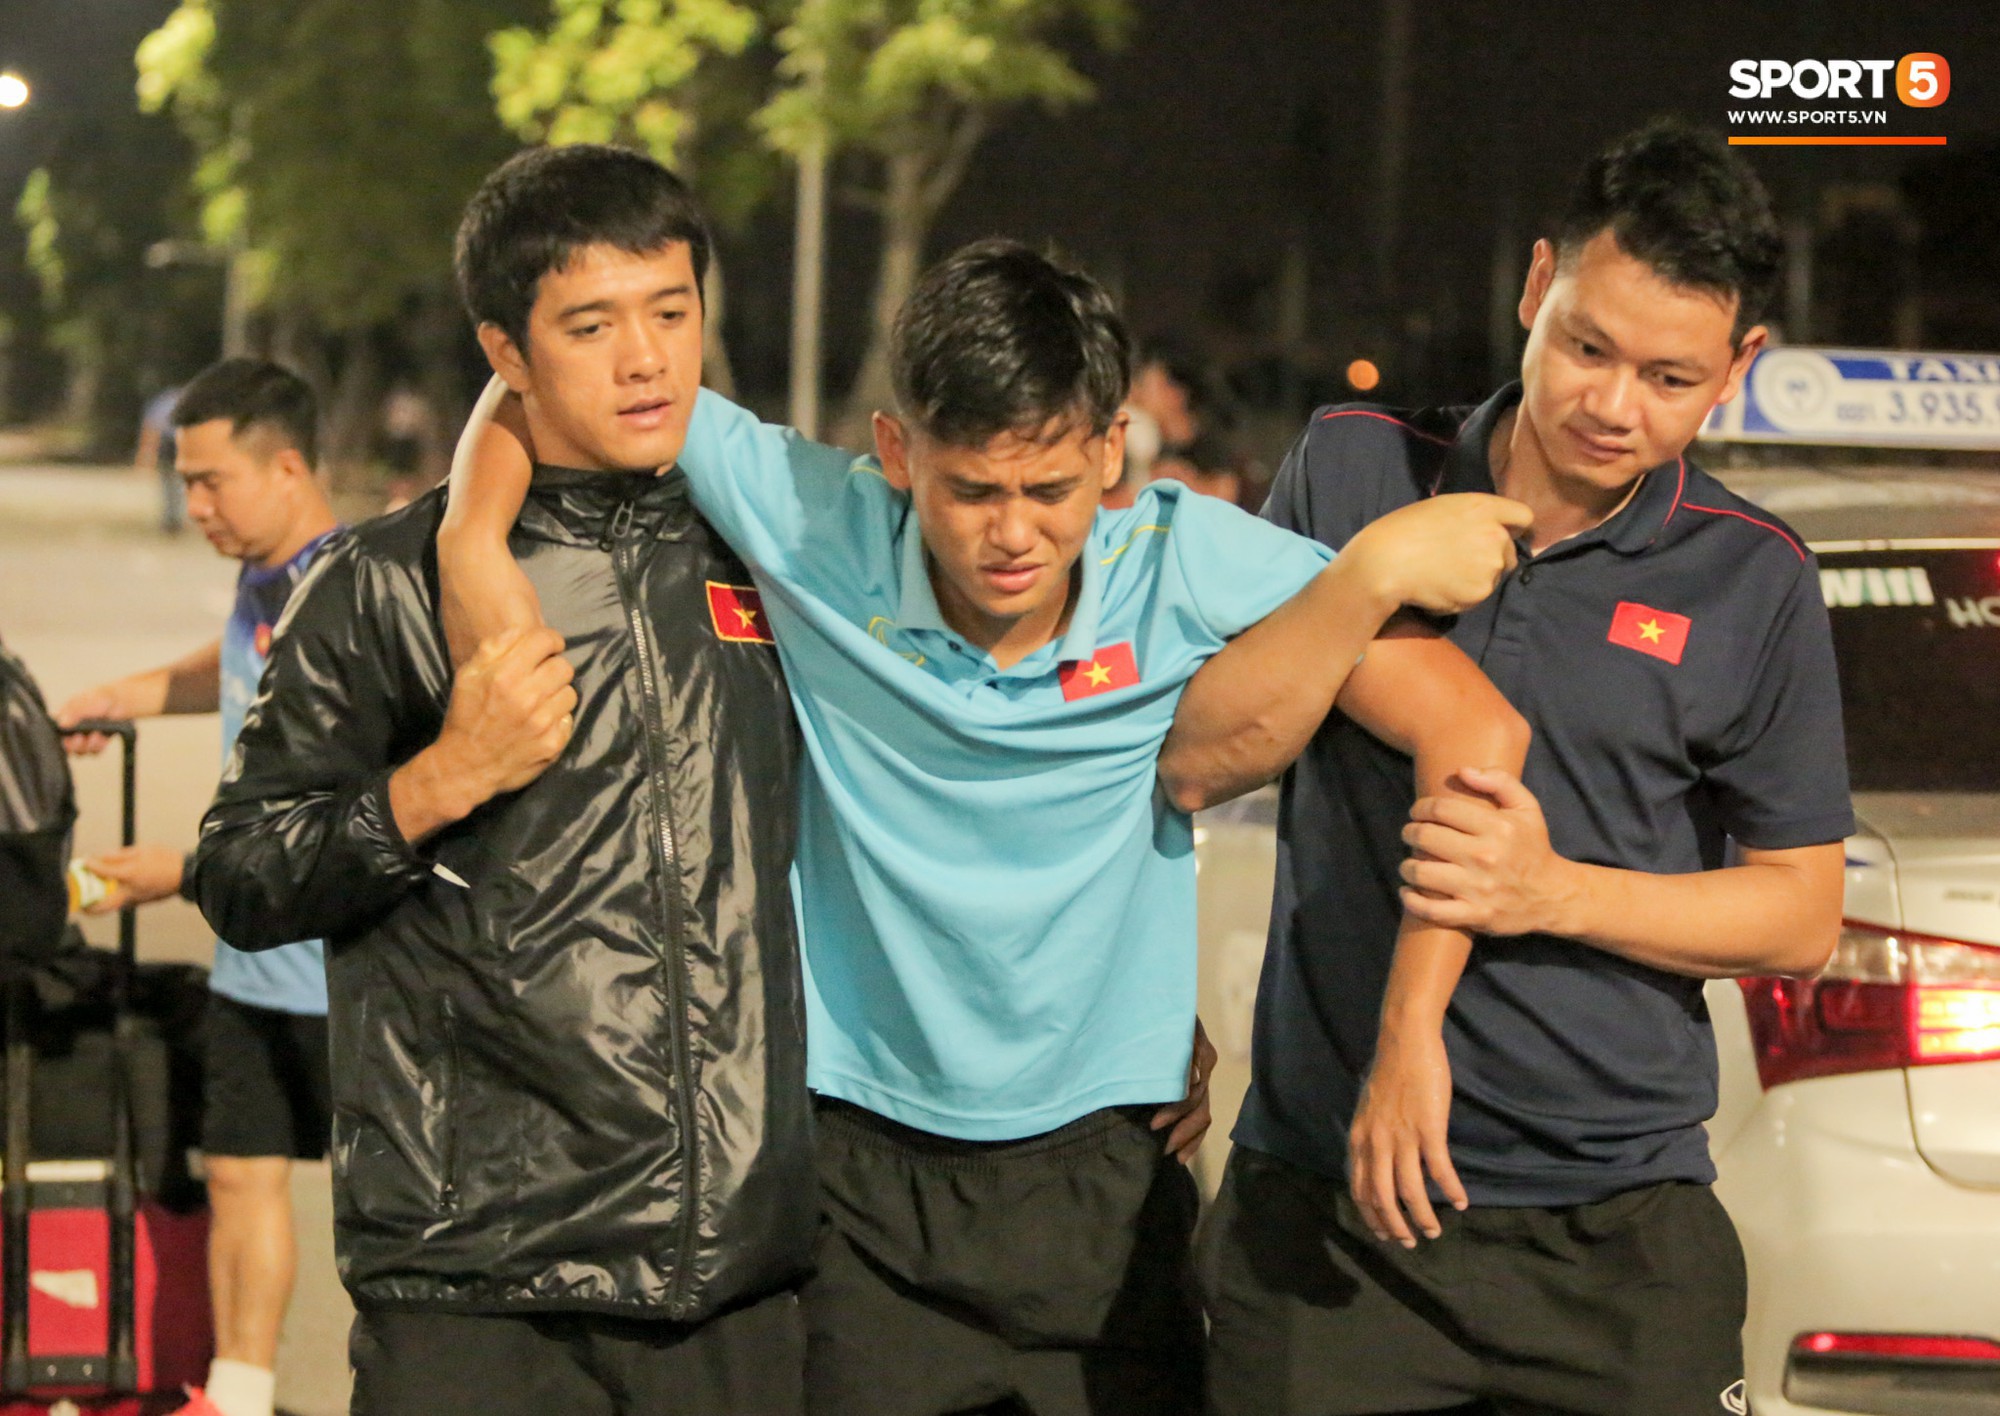 Cầu thủ U18 Việt Nam đau đến phát khóc, được thần y Hàn Quốc chữa ngay trên ngay trên đường - Ảnh 3.